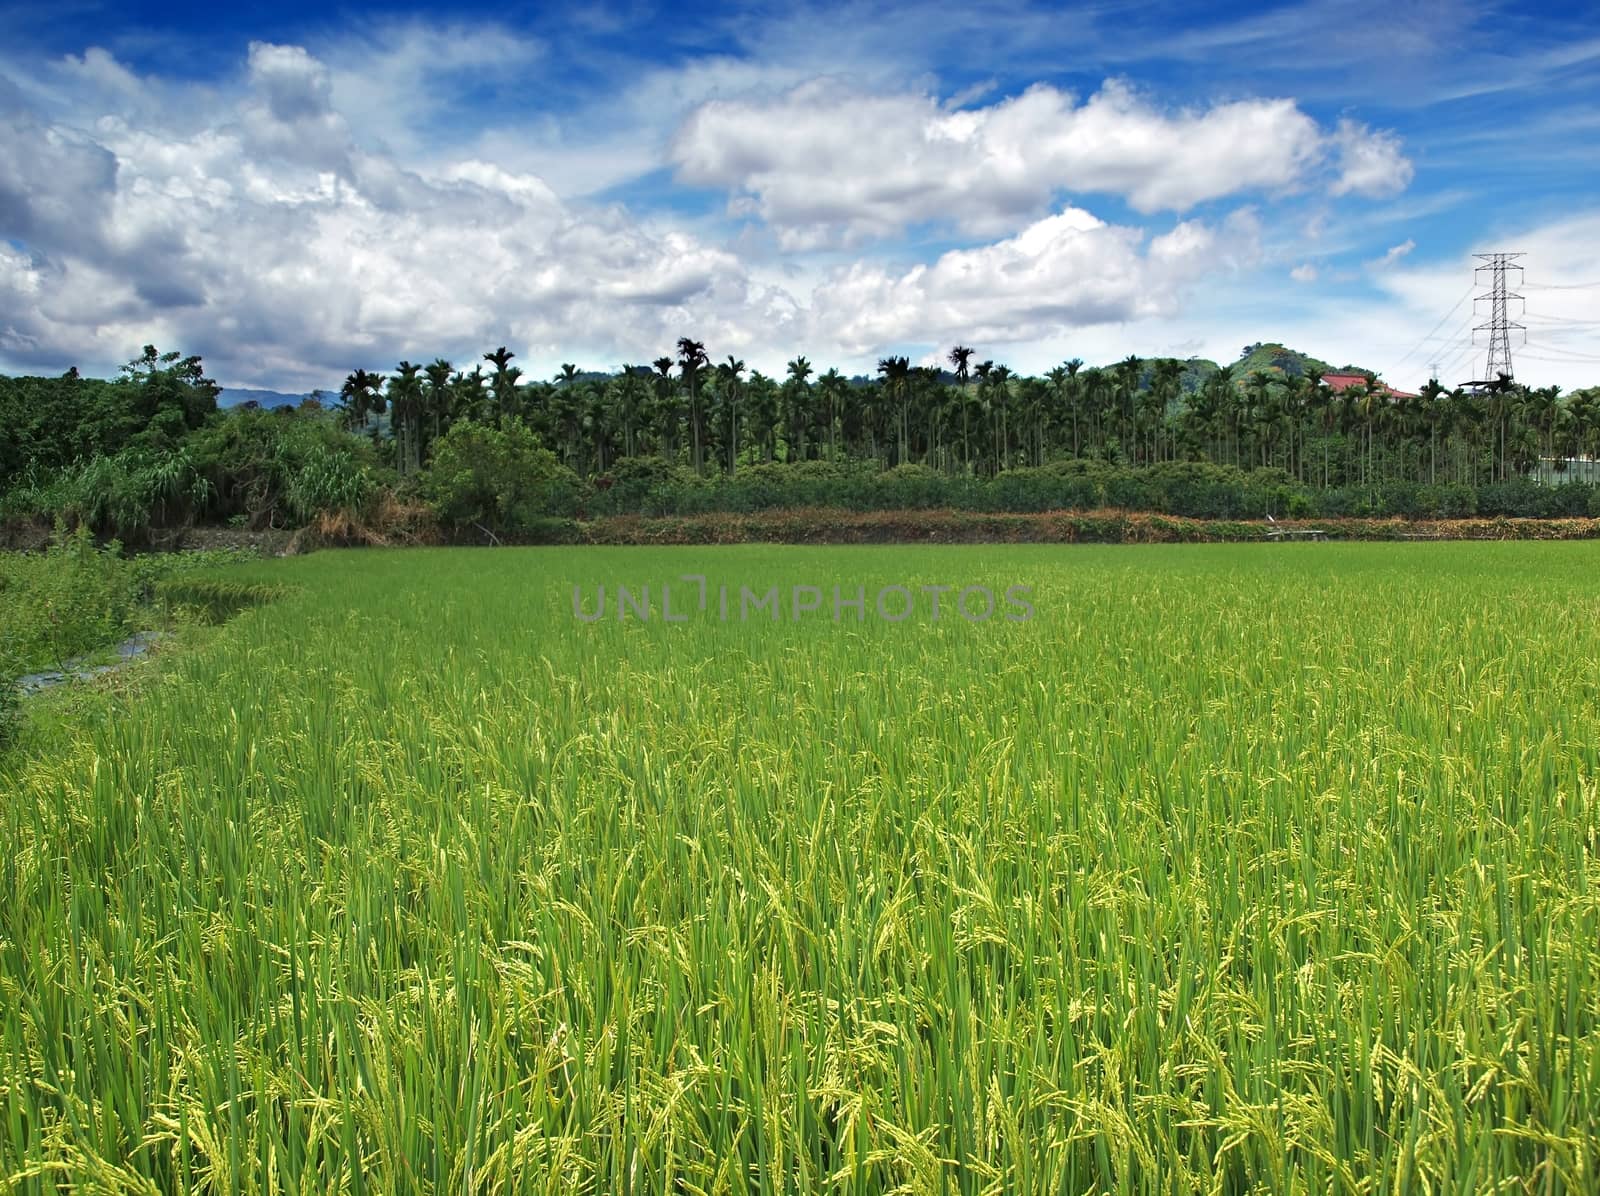 Beautiful rice field with ripe ears in southern Taiwan
